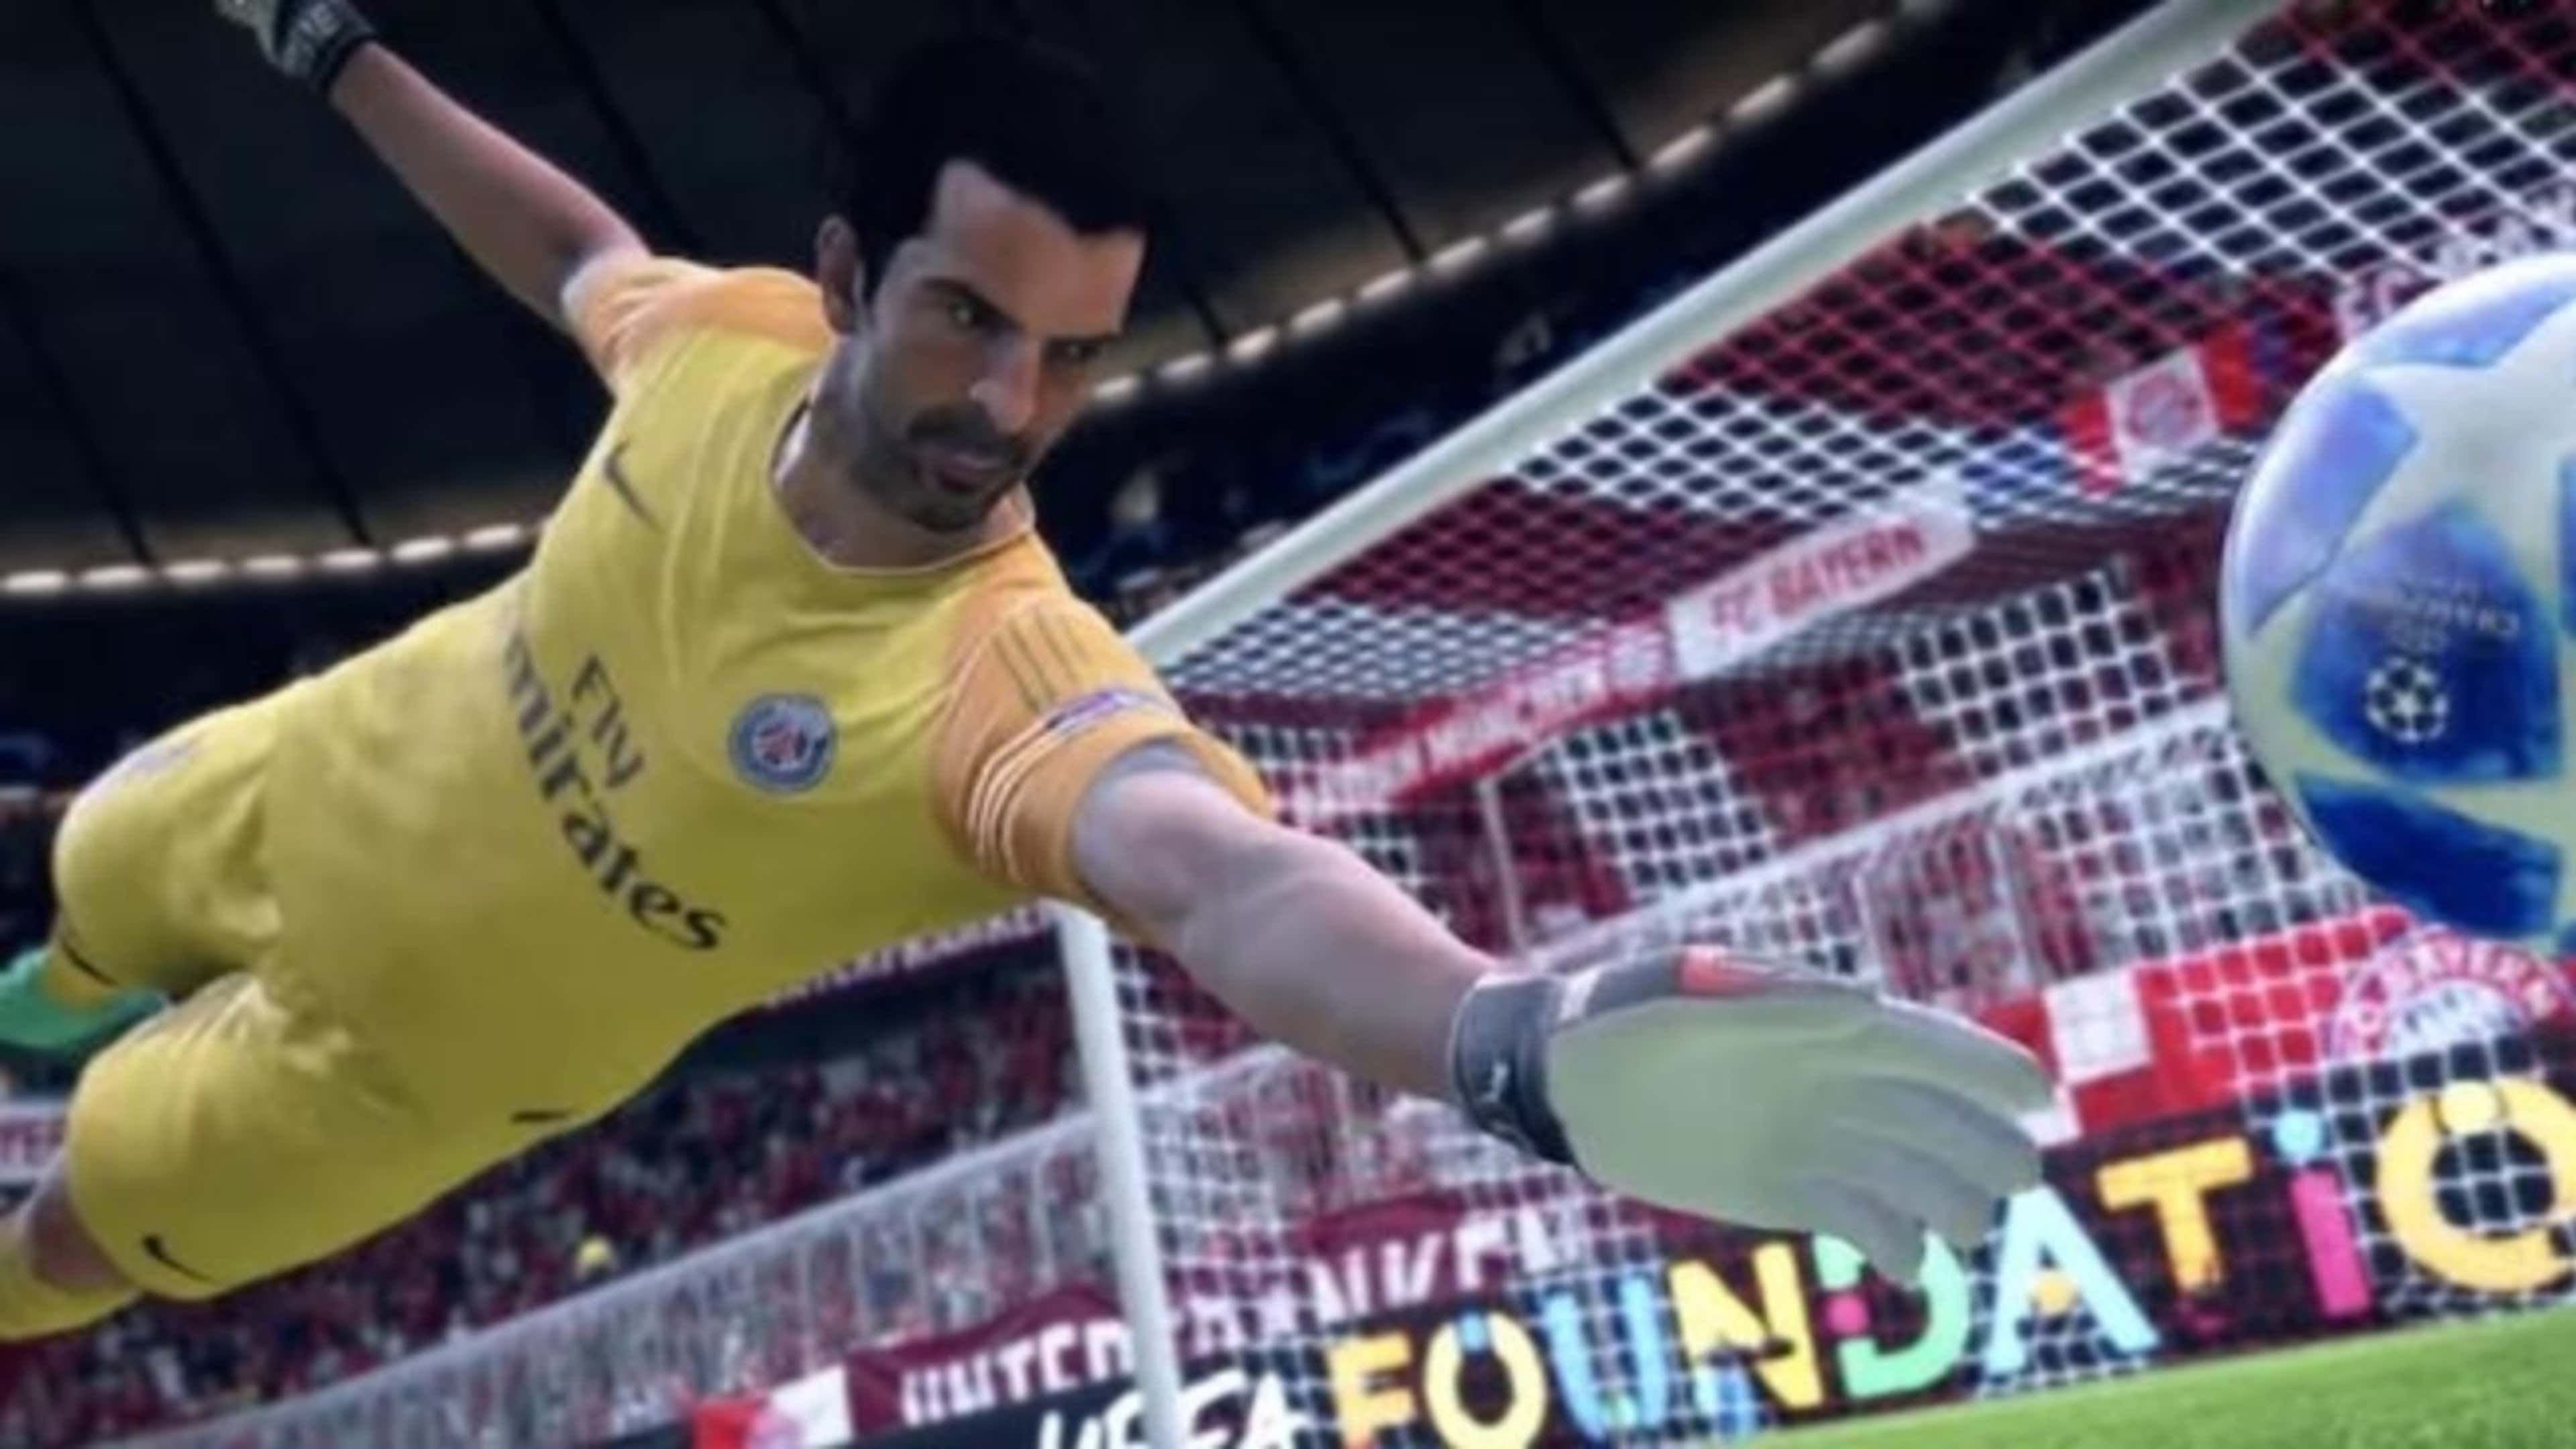 FIFA 19 traz novas e divertidas maneiras de se jogar futebol